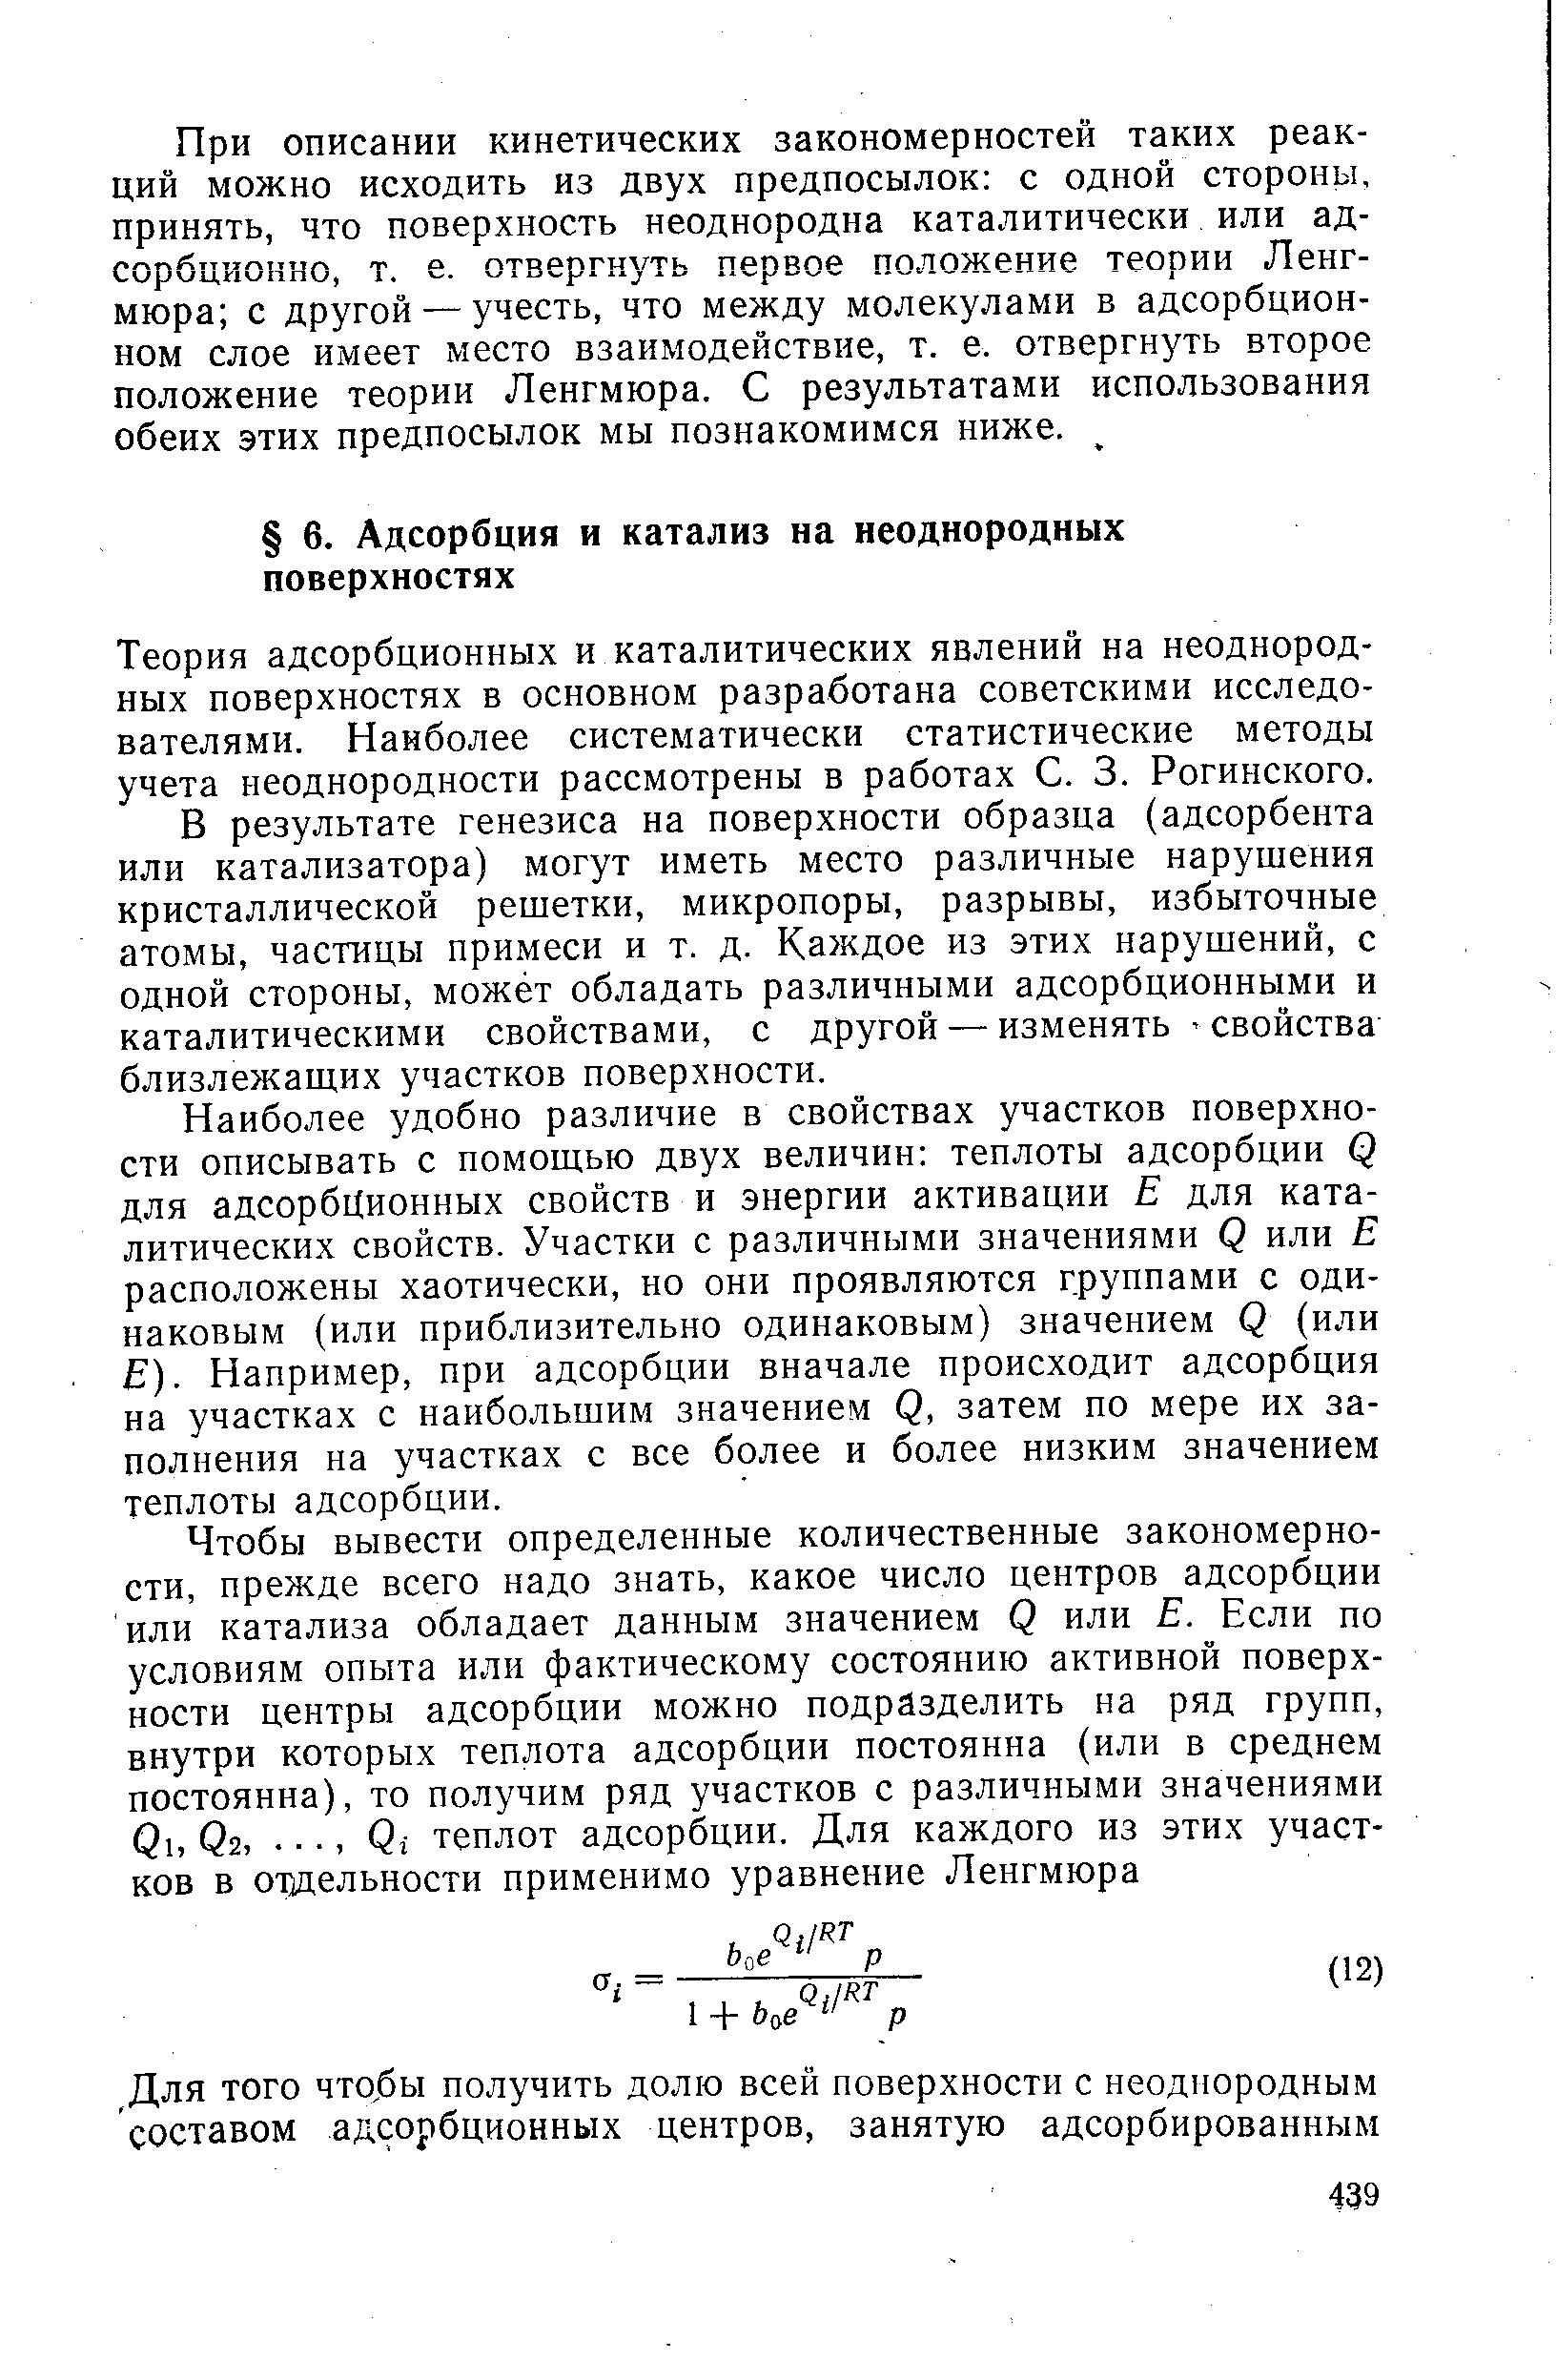 Теория адсорбционных и каталитических явлений на неоднородных поверхностях в основном разработана советскими исследователями. Наиболее систематически статистические методы учета неоднородности рассмотрены в работах С. 3. Рогинского.